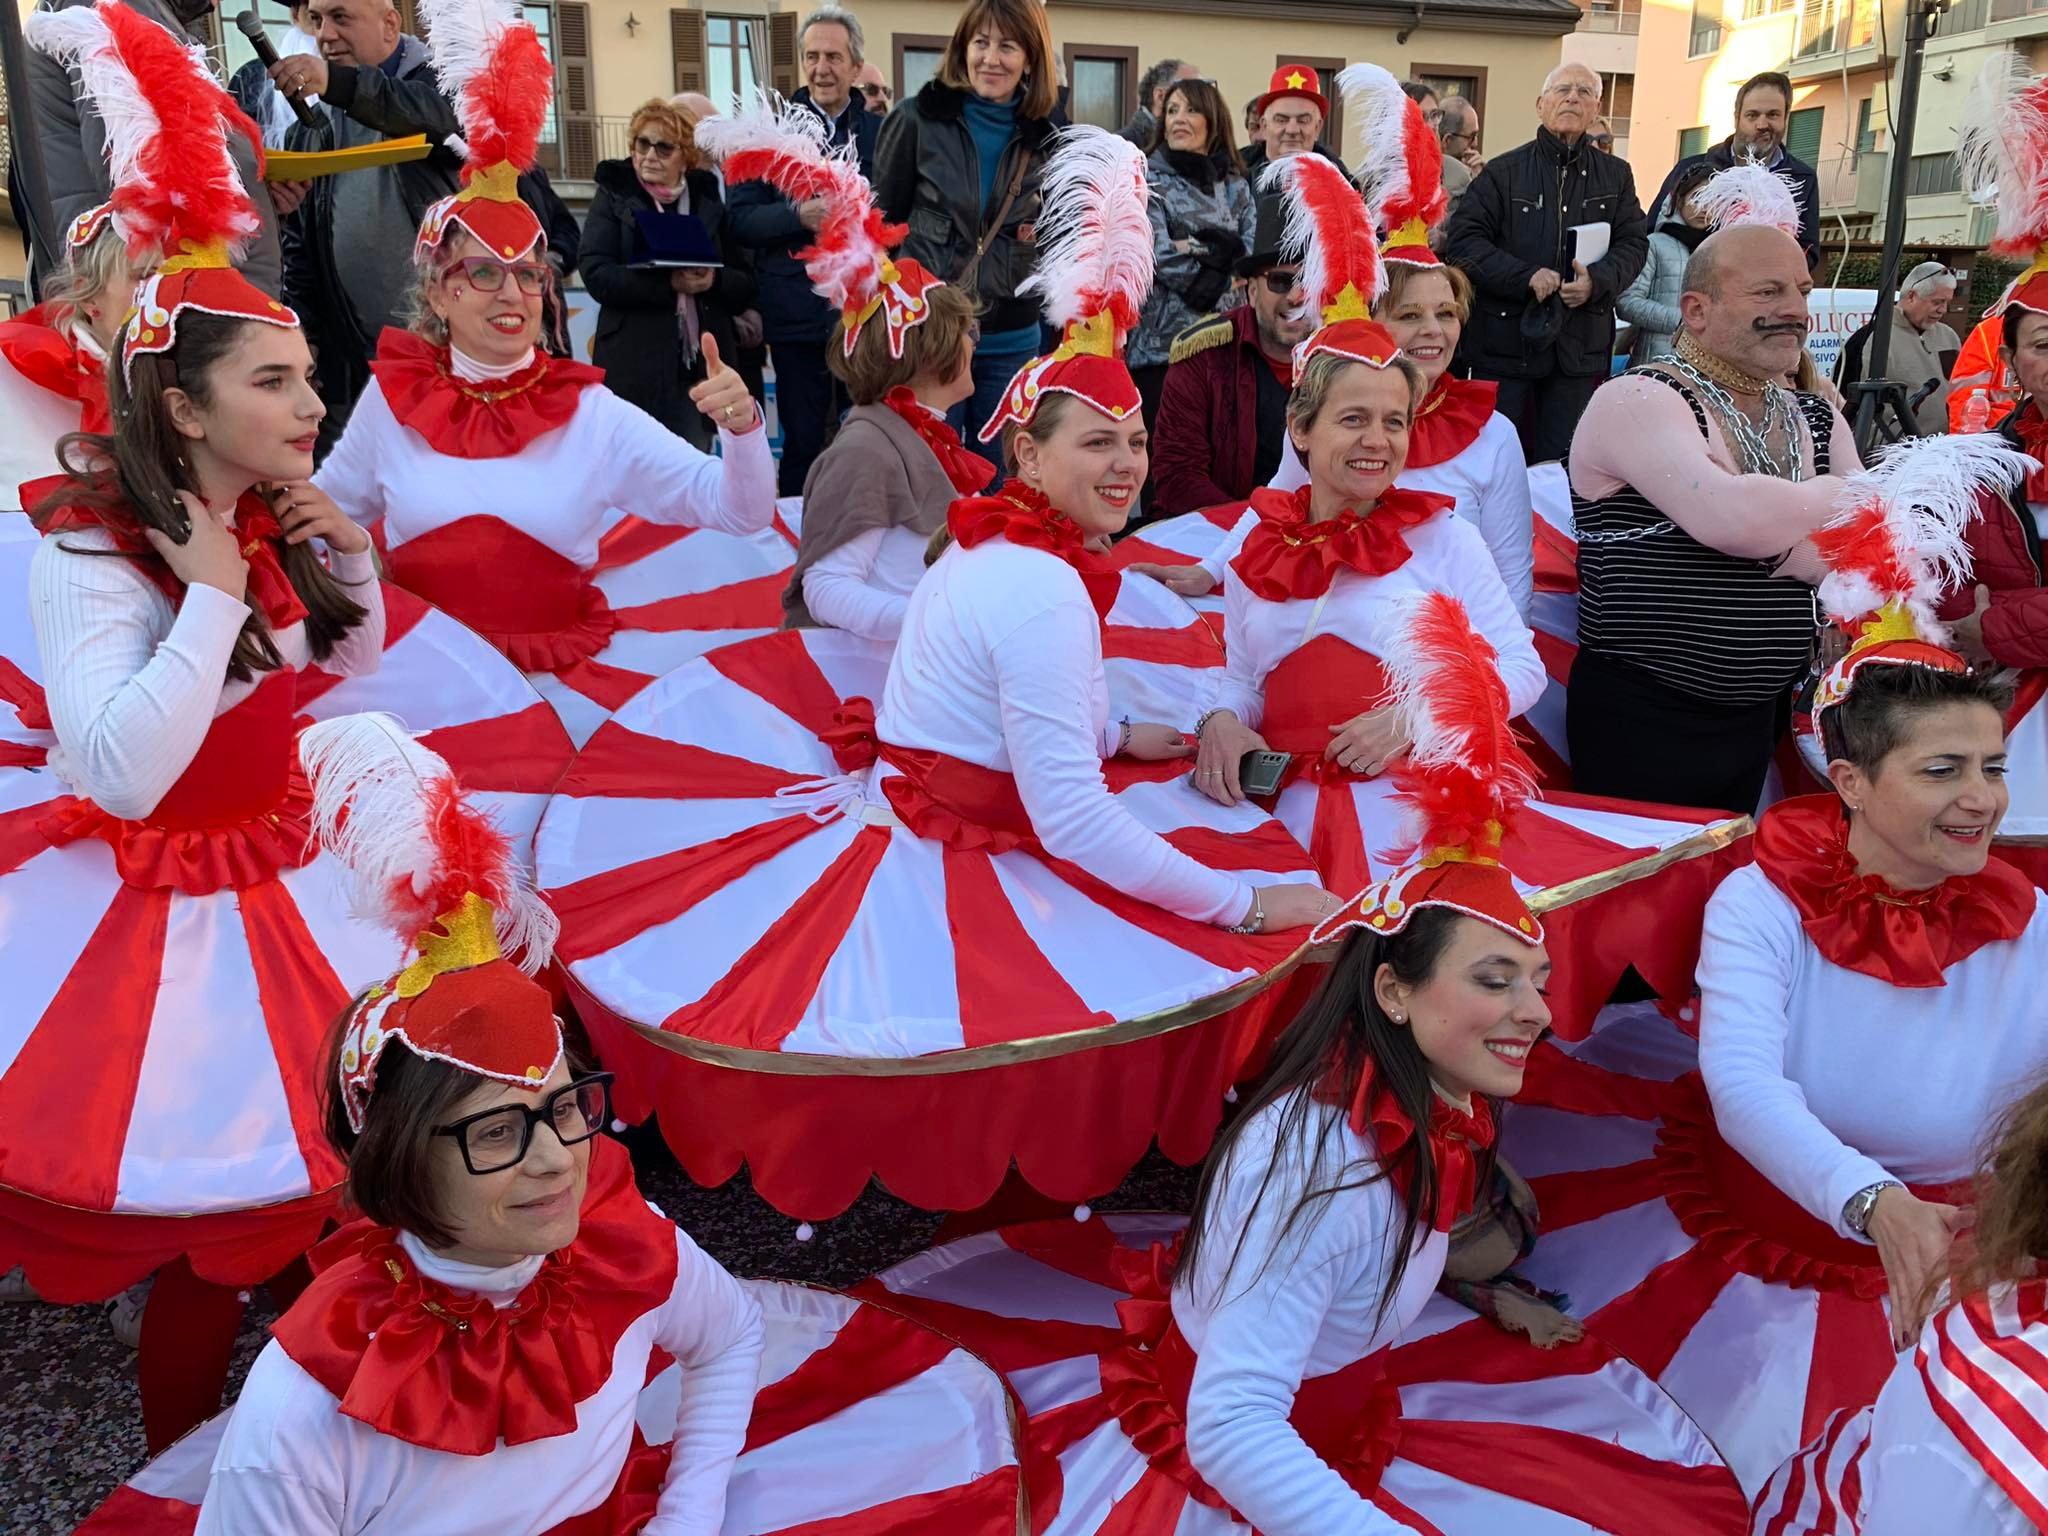 Carnevale al quartiere Cristo di Alessandria: a San Salvatore il premio del carro più bello [FOTO]